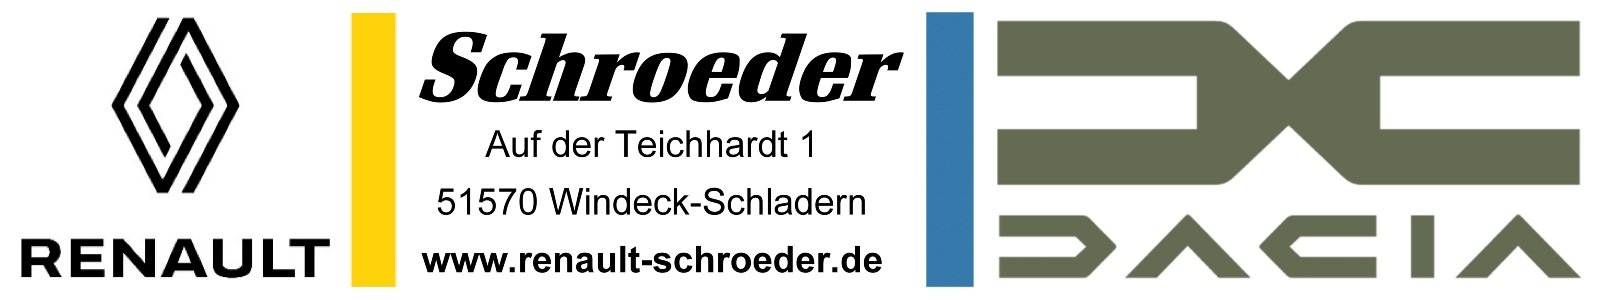 Schroeder_neu